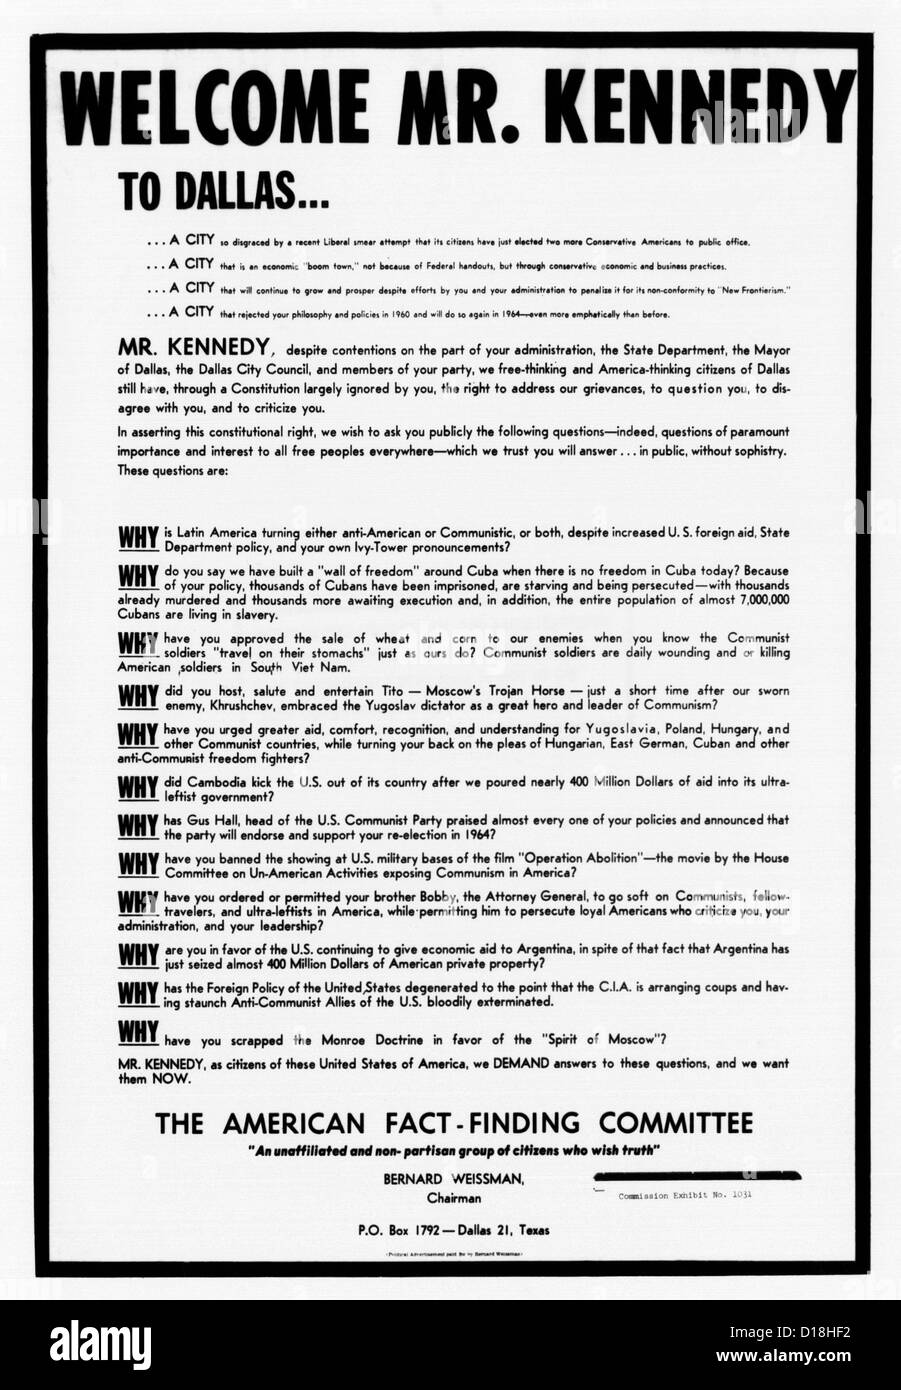 Warren-Kommission-Ausstellung. Rechtsextreme Anti-kommunistischen Breitseite während Präsident John Kennedy politische Reise nach Texas veröffentlicht Stockfoto